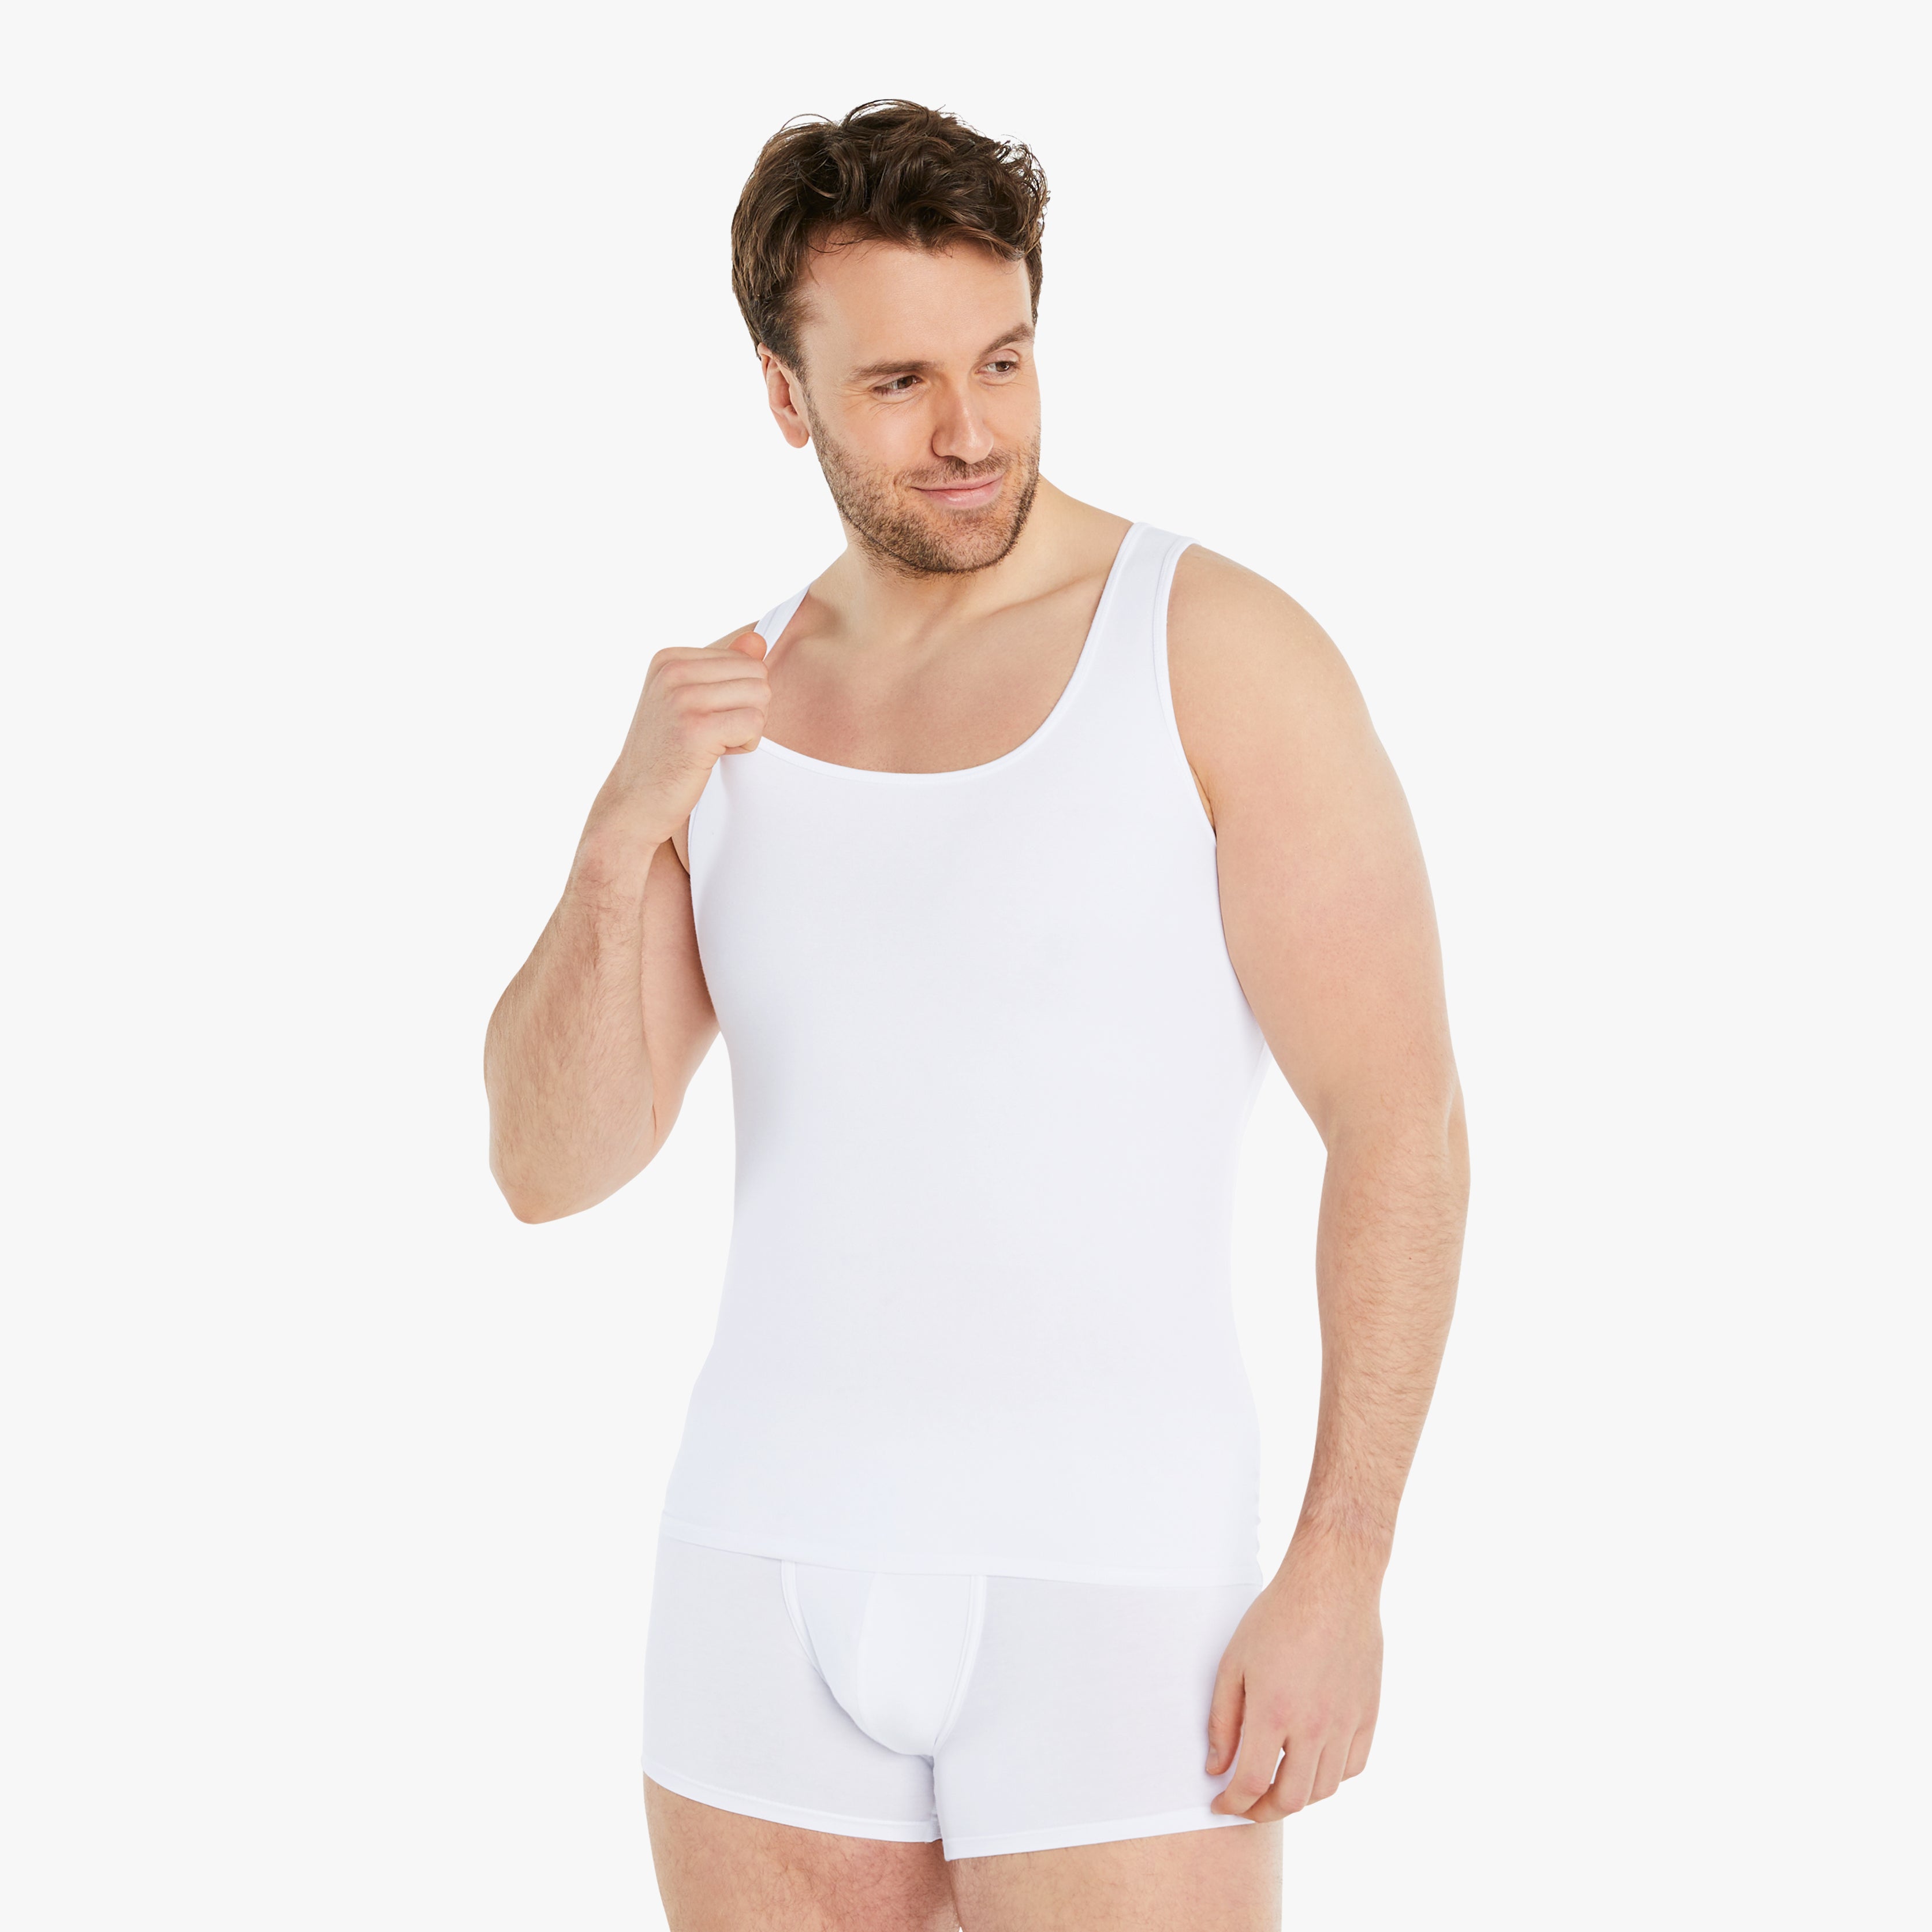  Ein lächelnder Mann trägt ein weißes Shapewear Kompressions-Unterhemd und schaut zur Seite. Das ärmellose Unterhemd bietet einen starken Bauch-weg Effekt und besteht aus hochwertiger Baumwolle für Tragekomfort. #farbe_weiß